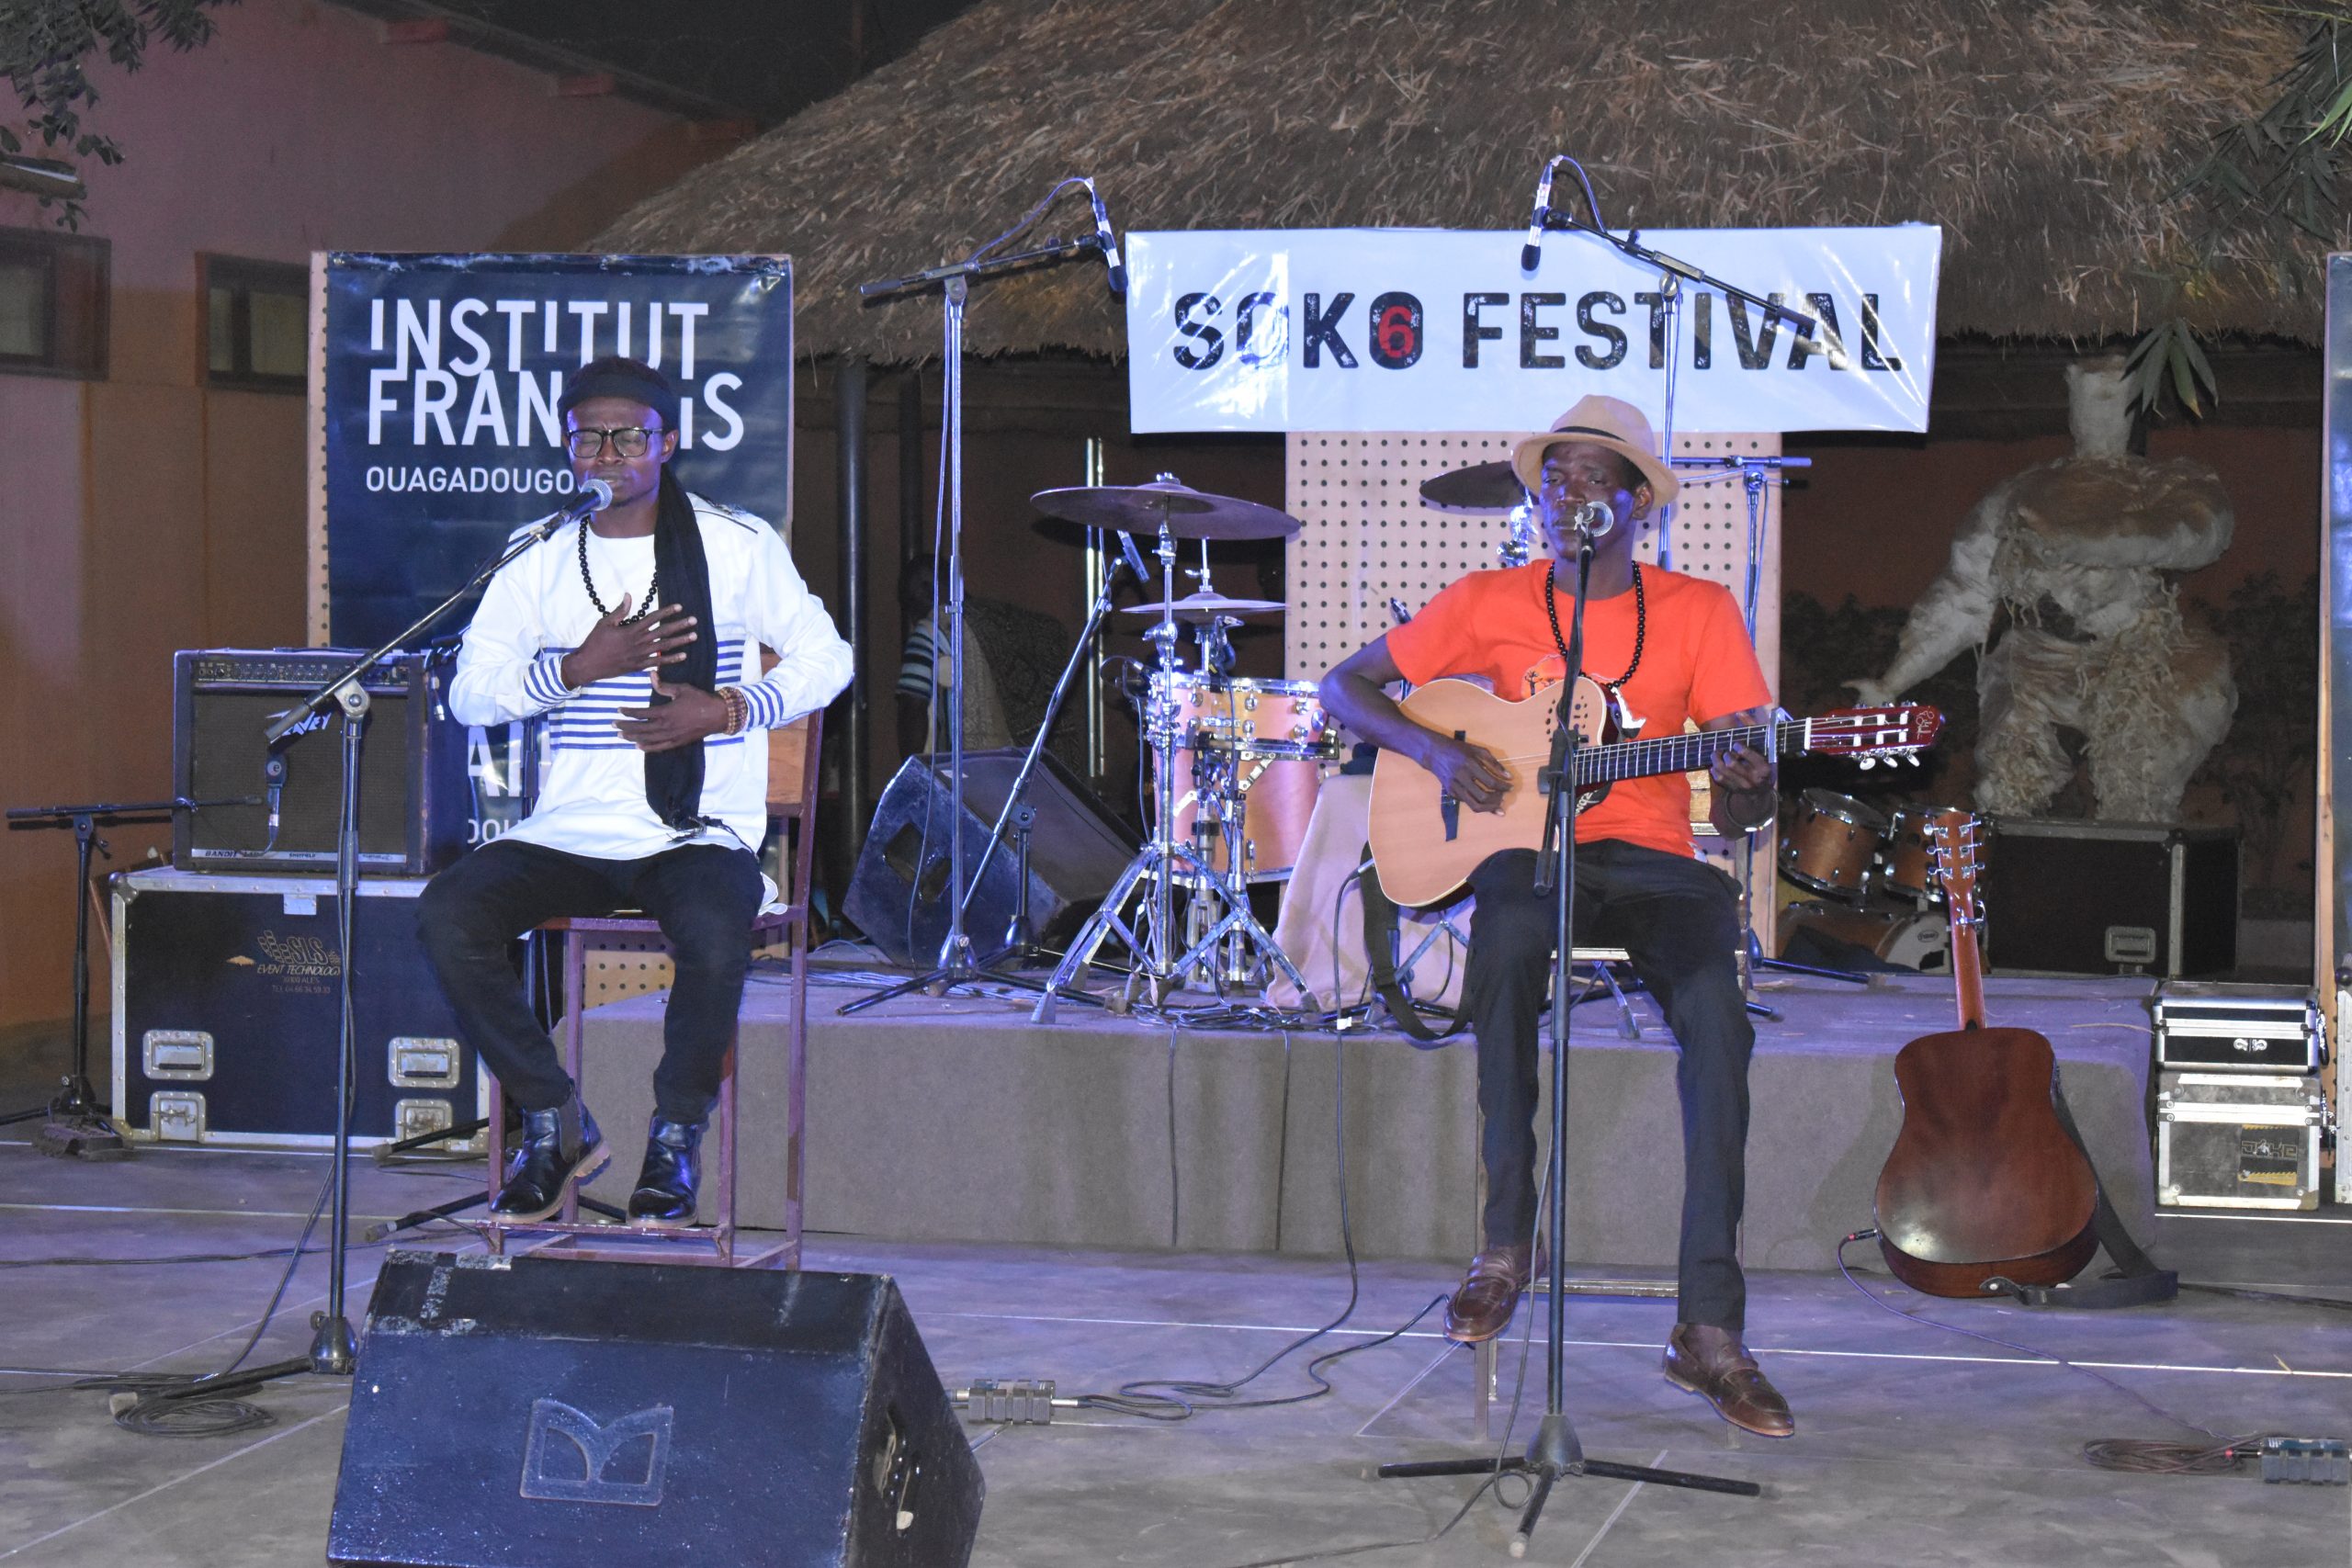 6è édition de Soko festival : de la musique pour sourire à la vie